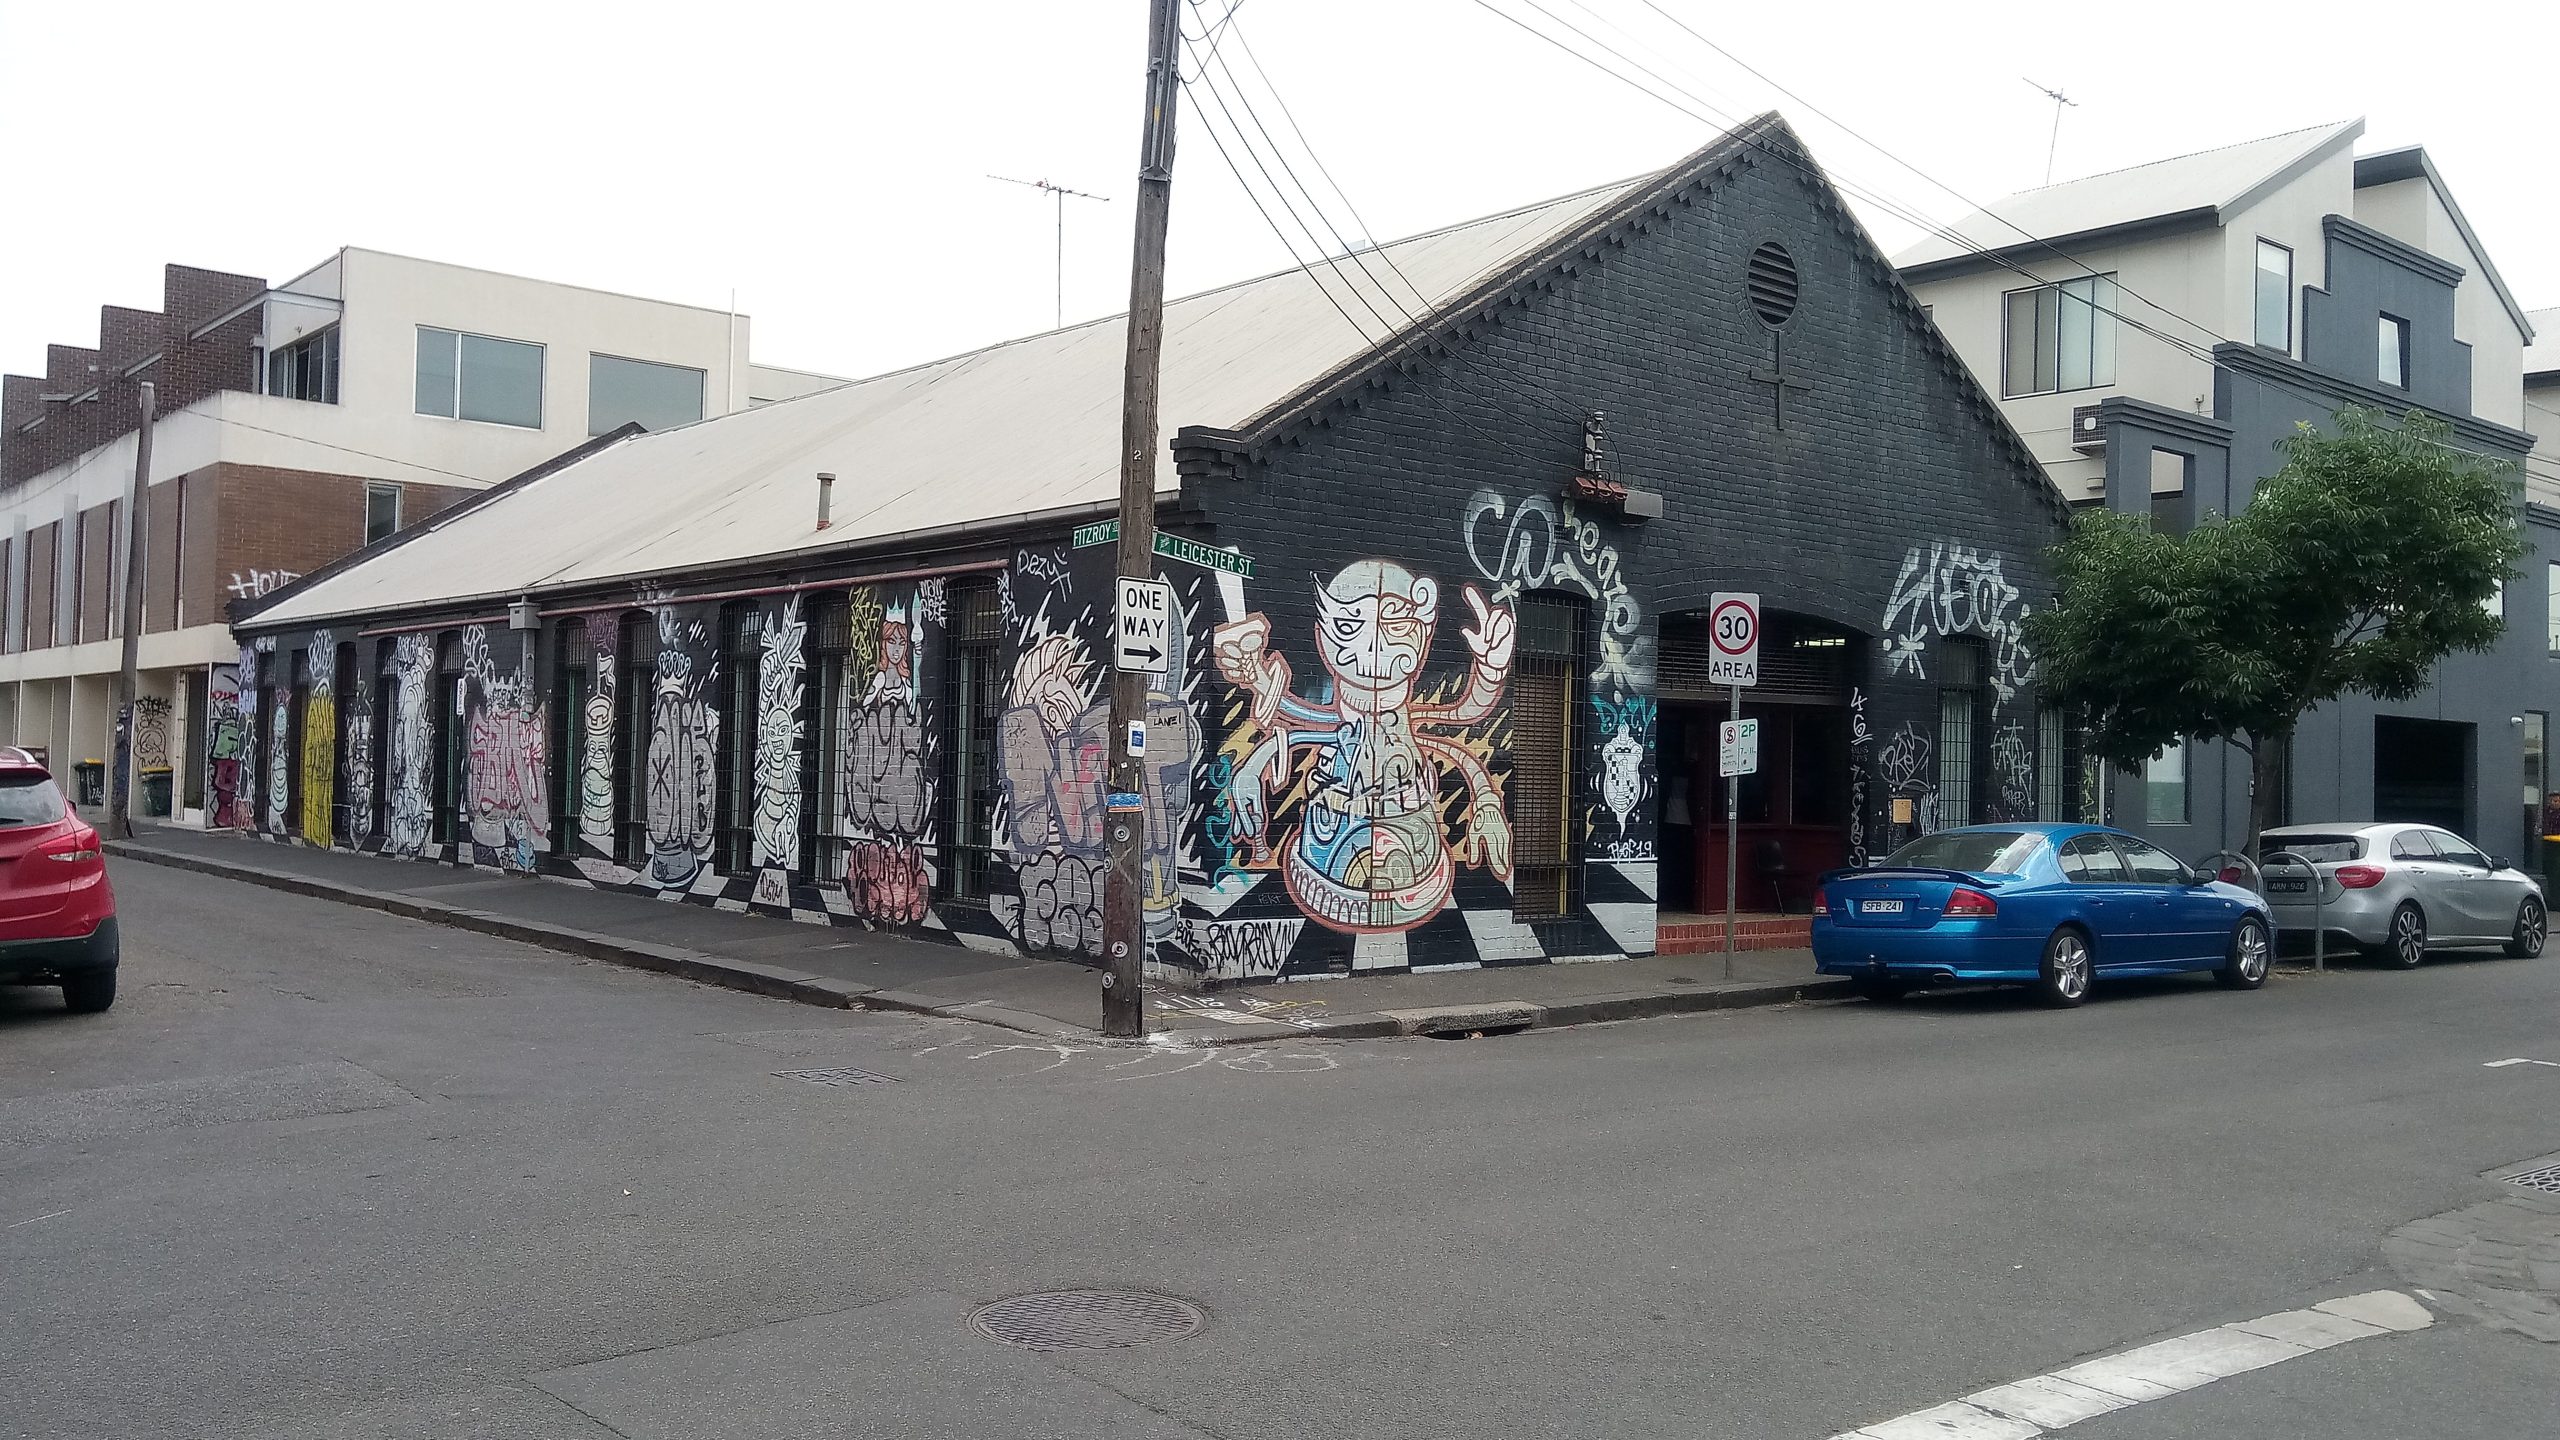 Melbourne Chess Club exterior